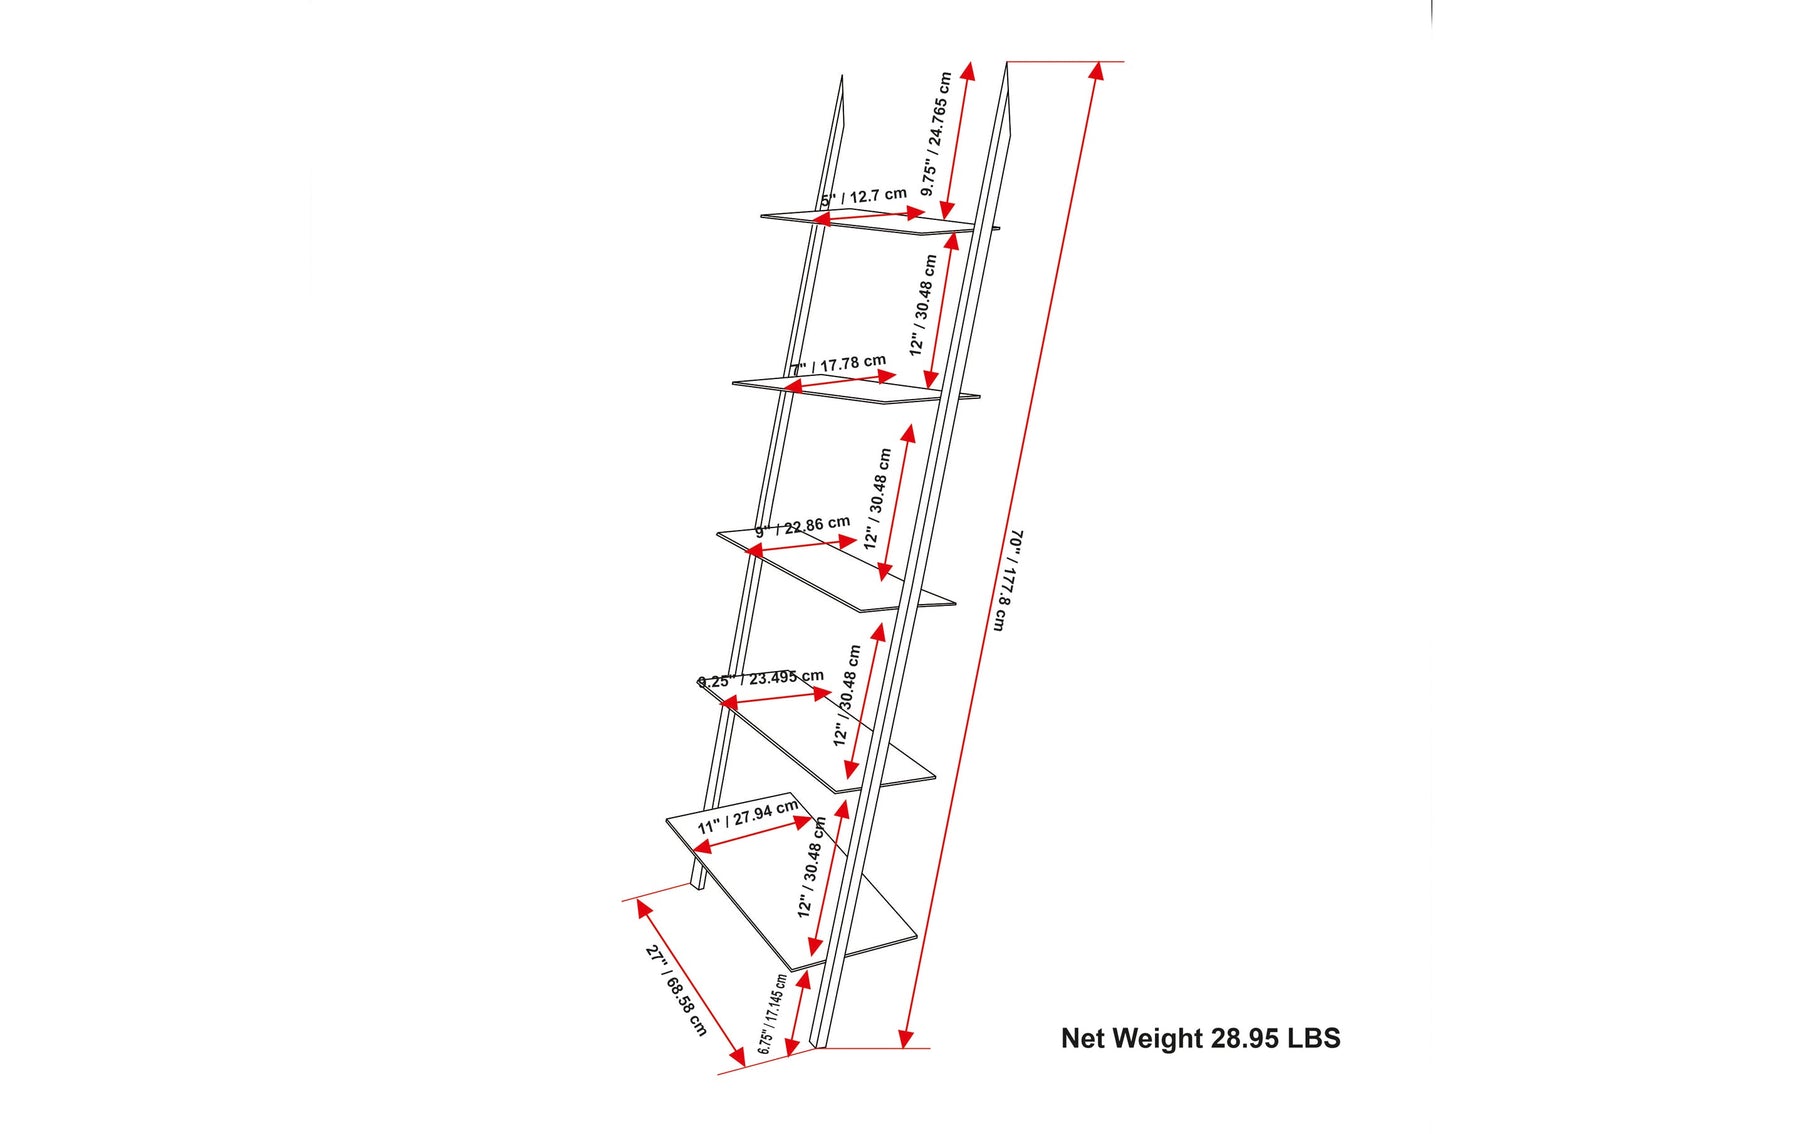 Trent Ladder Shelf